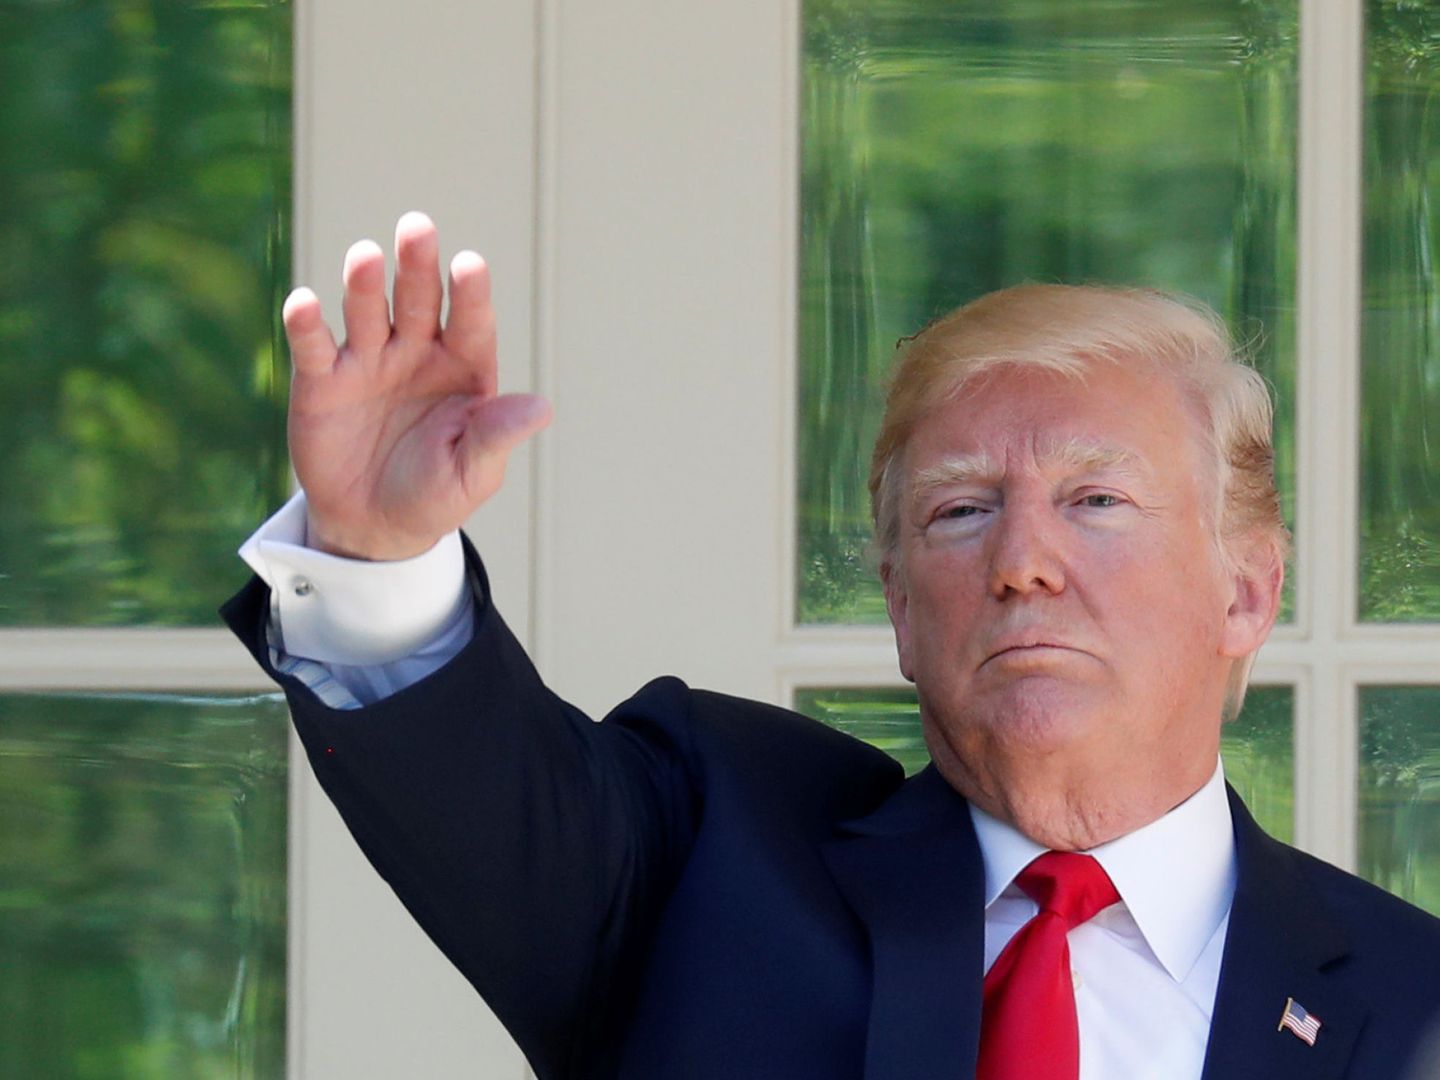 El presidente Trump saluda a los asistentes a la Casa Blanca, el 3 de mayo de 2018. (Reuters)